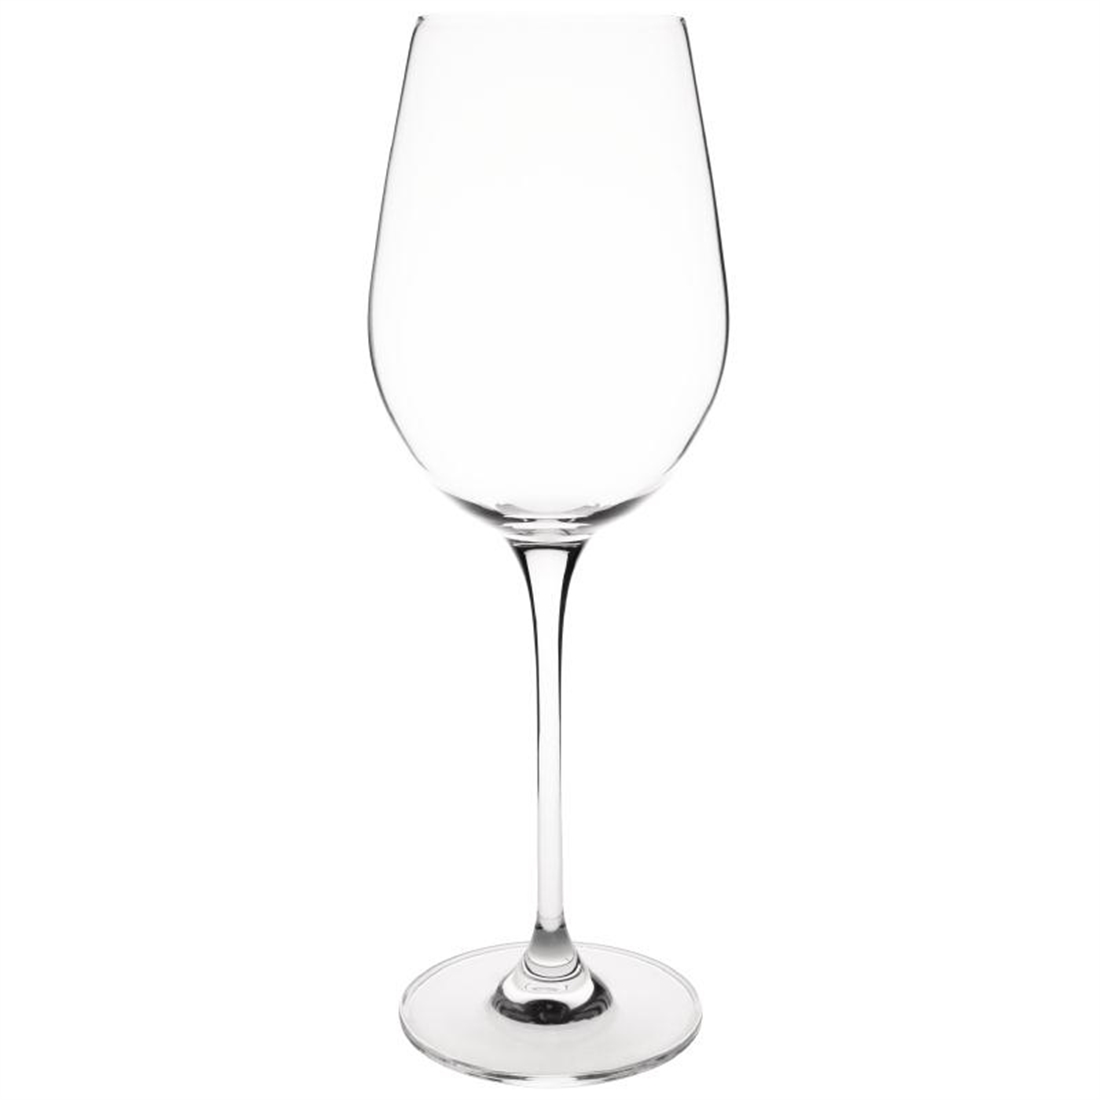 Olympia Campana Crystal One Piece Wine Glass 385ml